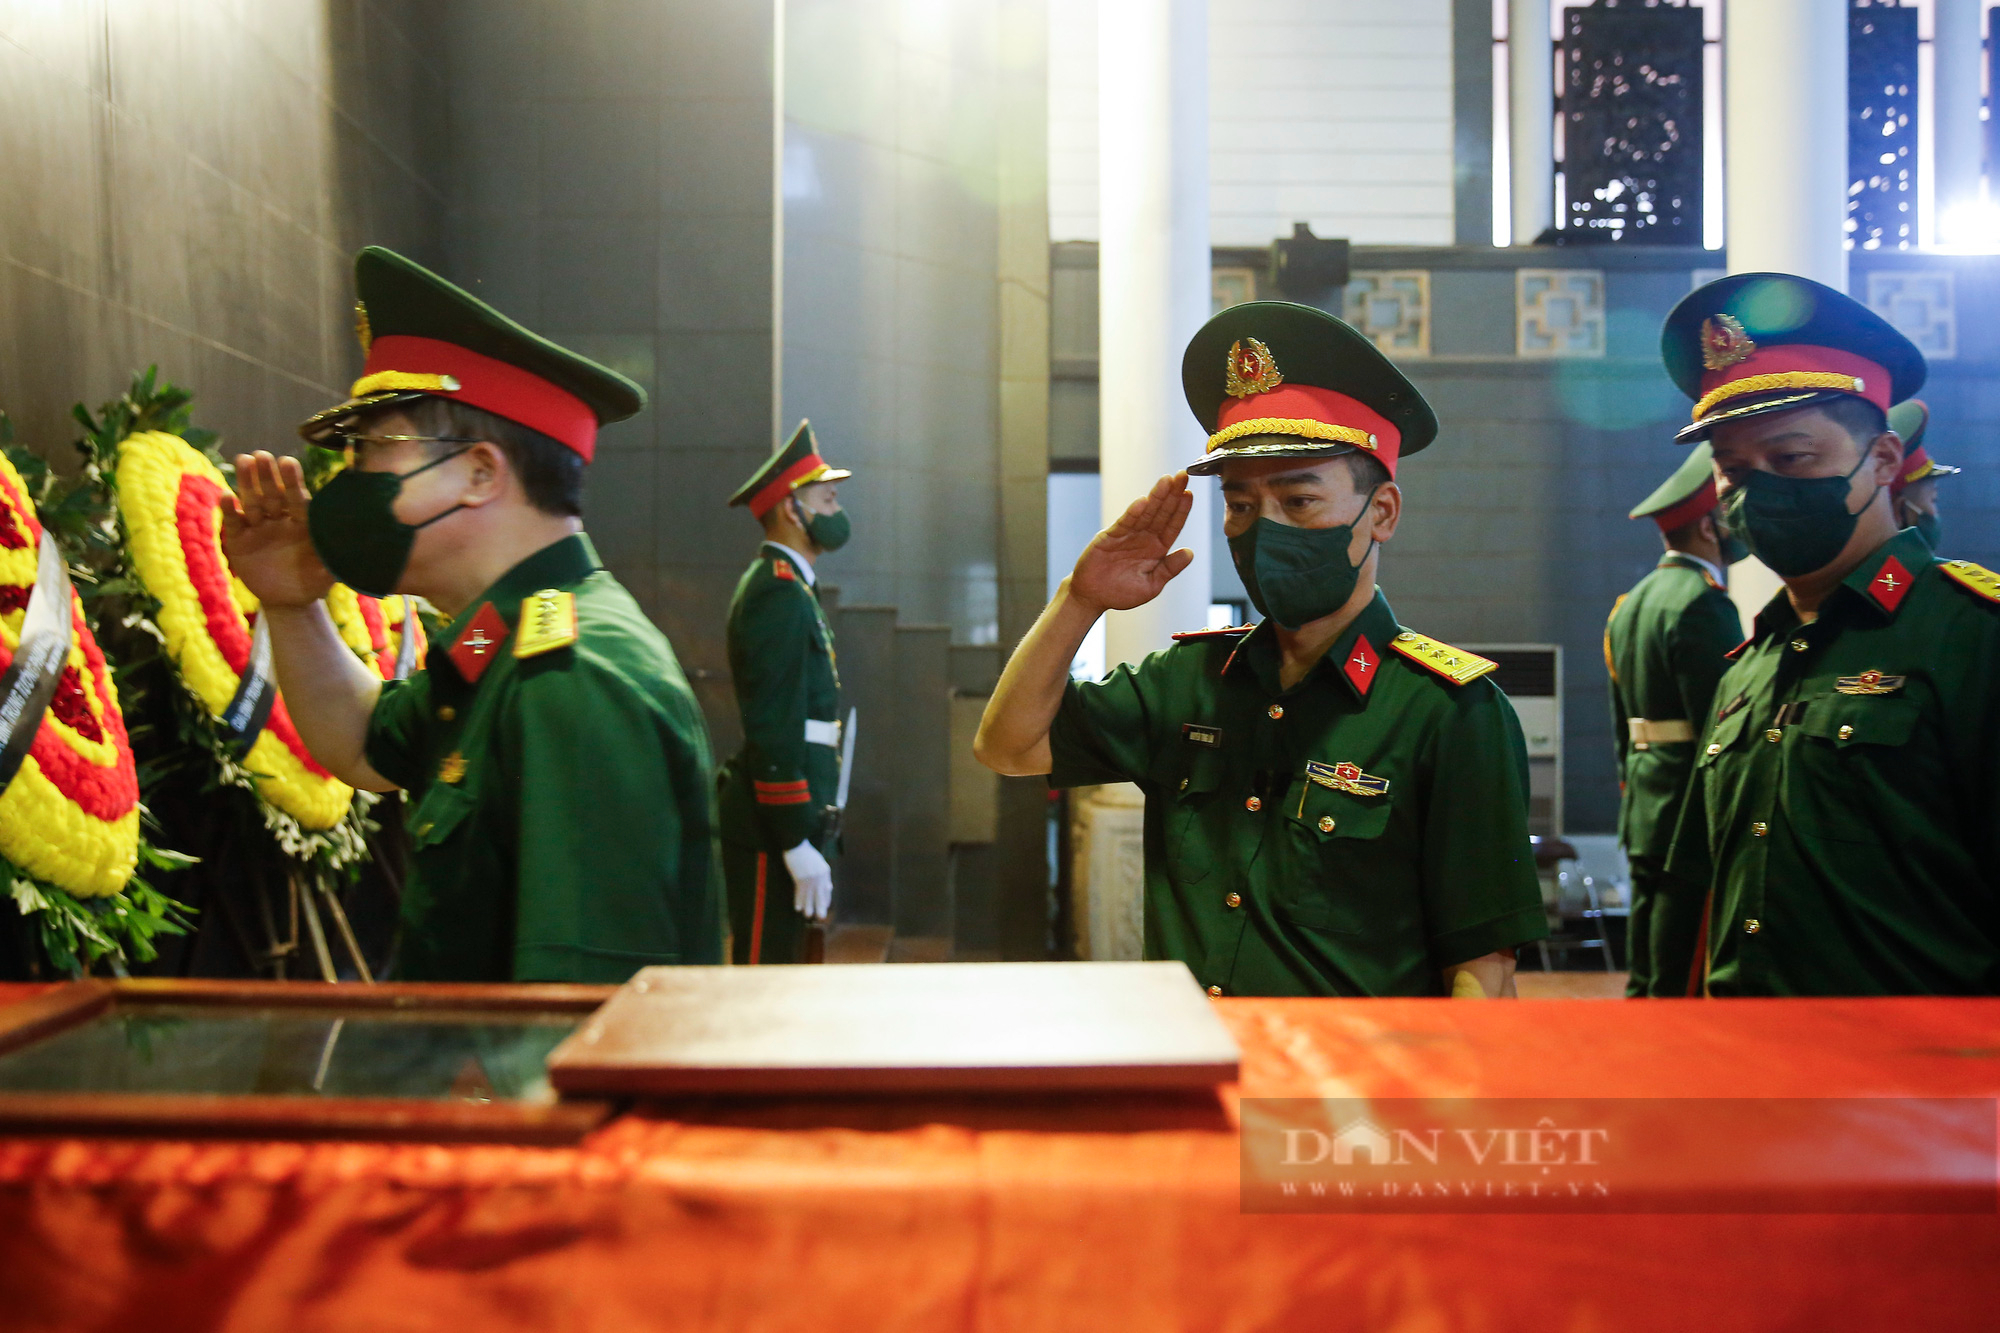 Lễ tang Đại tá Vũ Đình Hòe-Tiểu đoàn trưởng đánh đồi A1 suốt 38 ngày đêm trong chiến dịch Điện Biên Phủ - Ảnh 4.